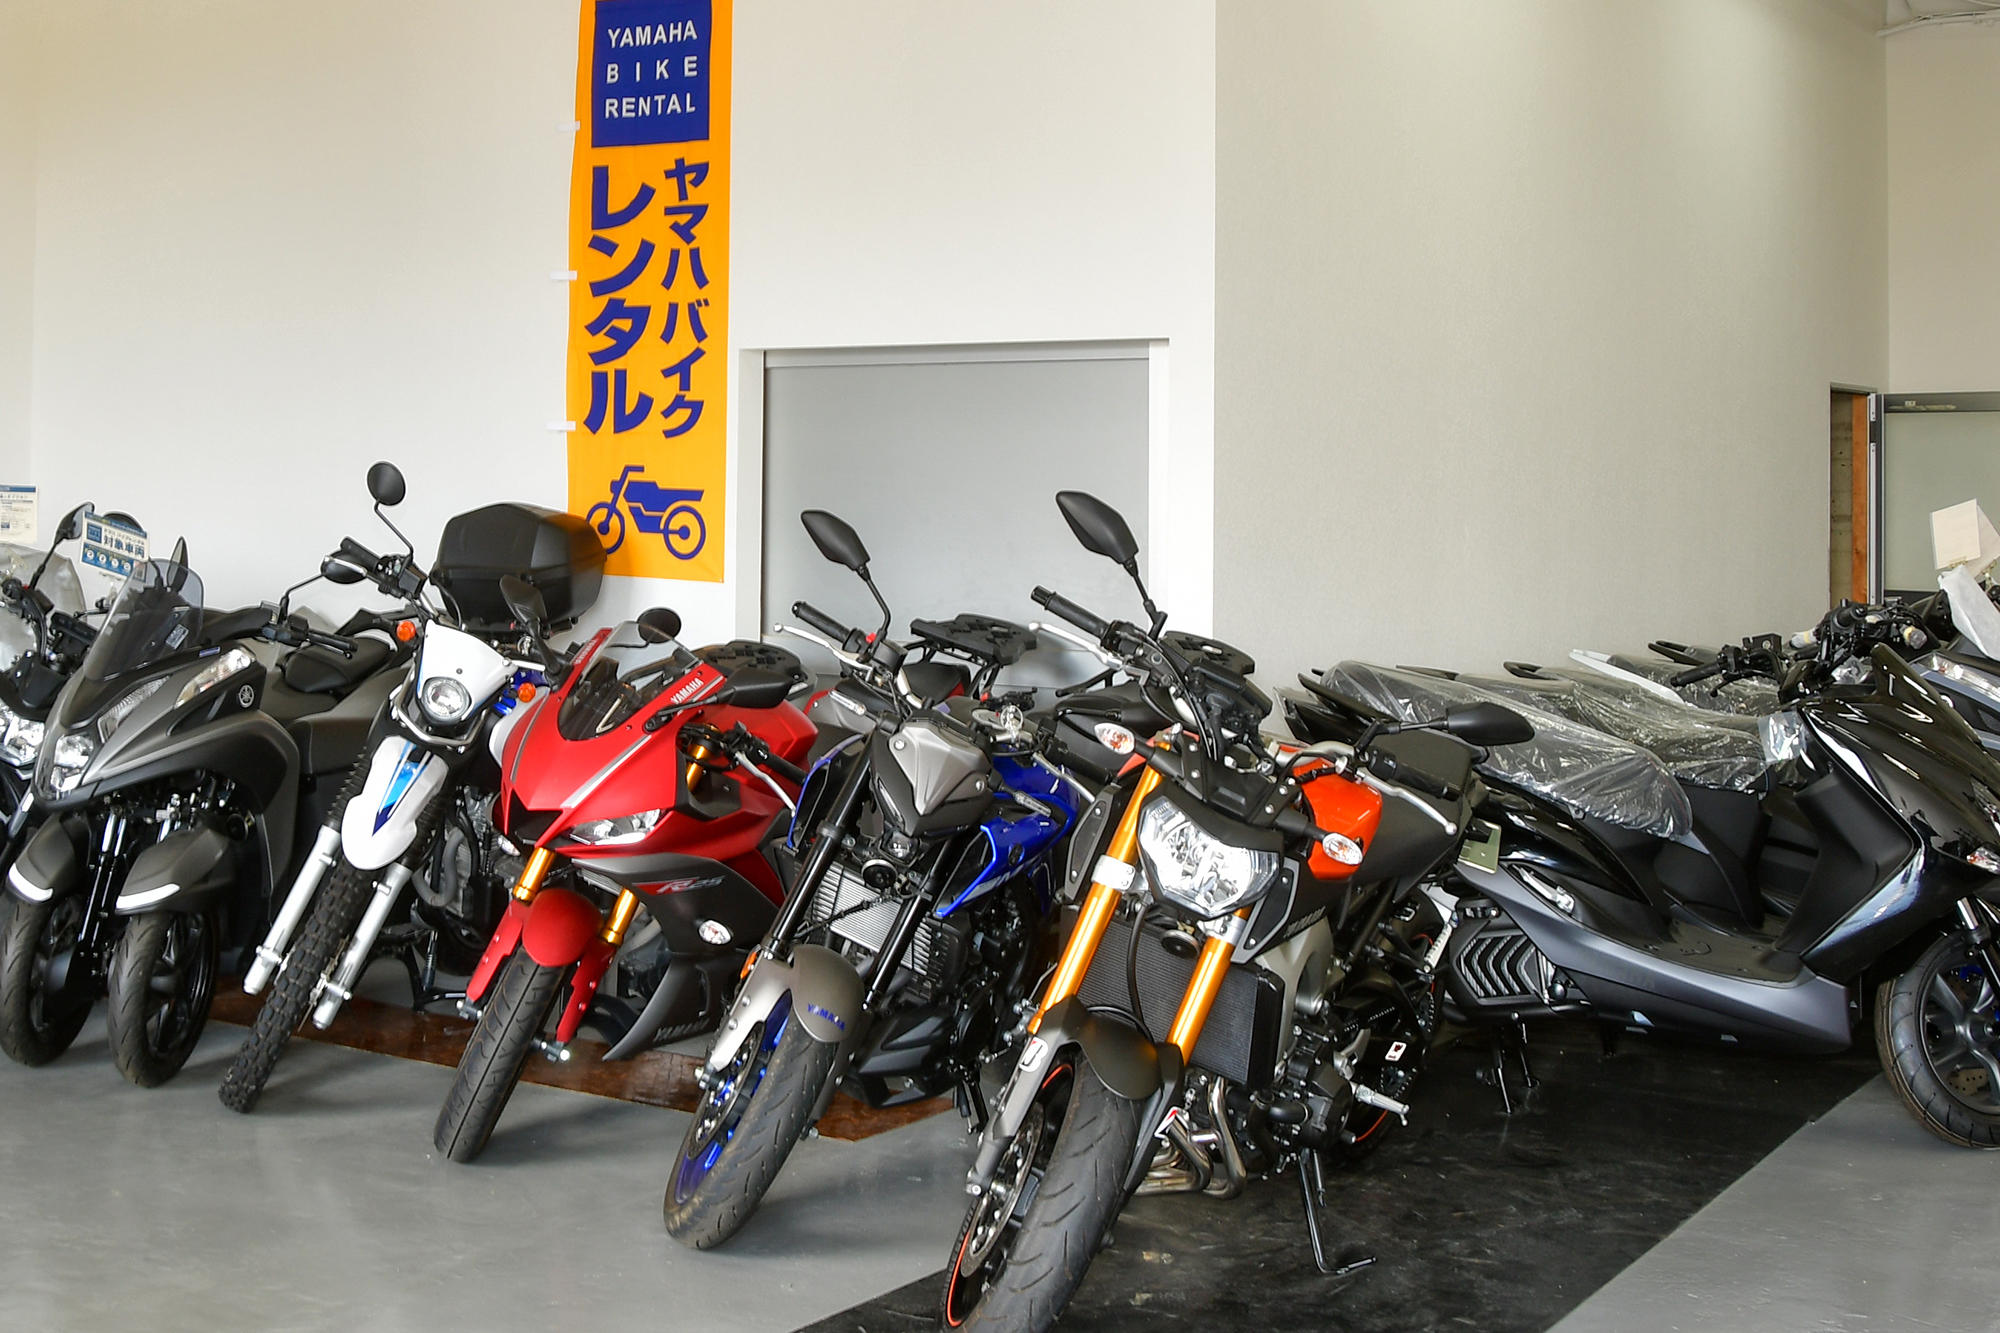 YSP京都長岡京さんではヤマハ バイクレンタルやっていますので、レンタルの際にも連絡を入れれば送迎してもらえますよ。